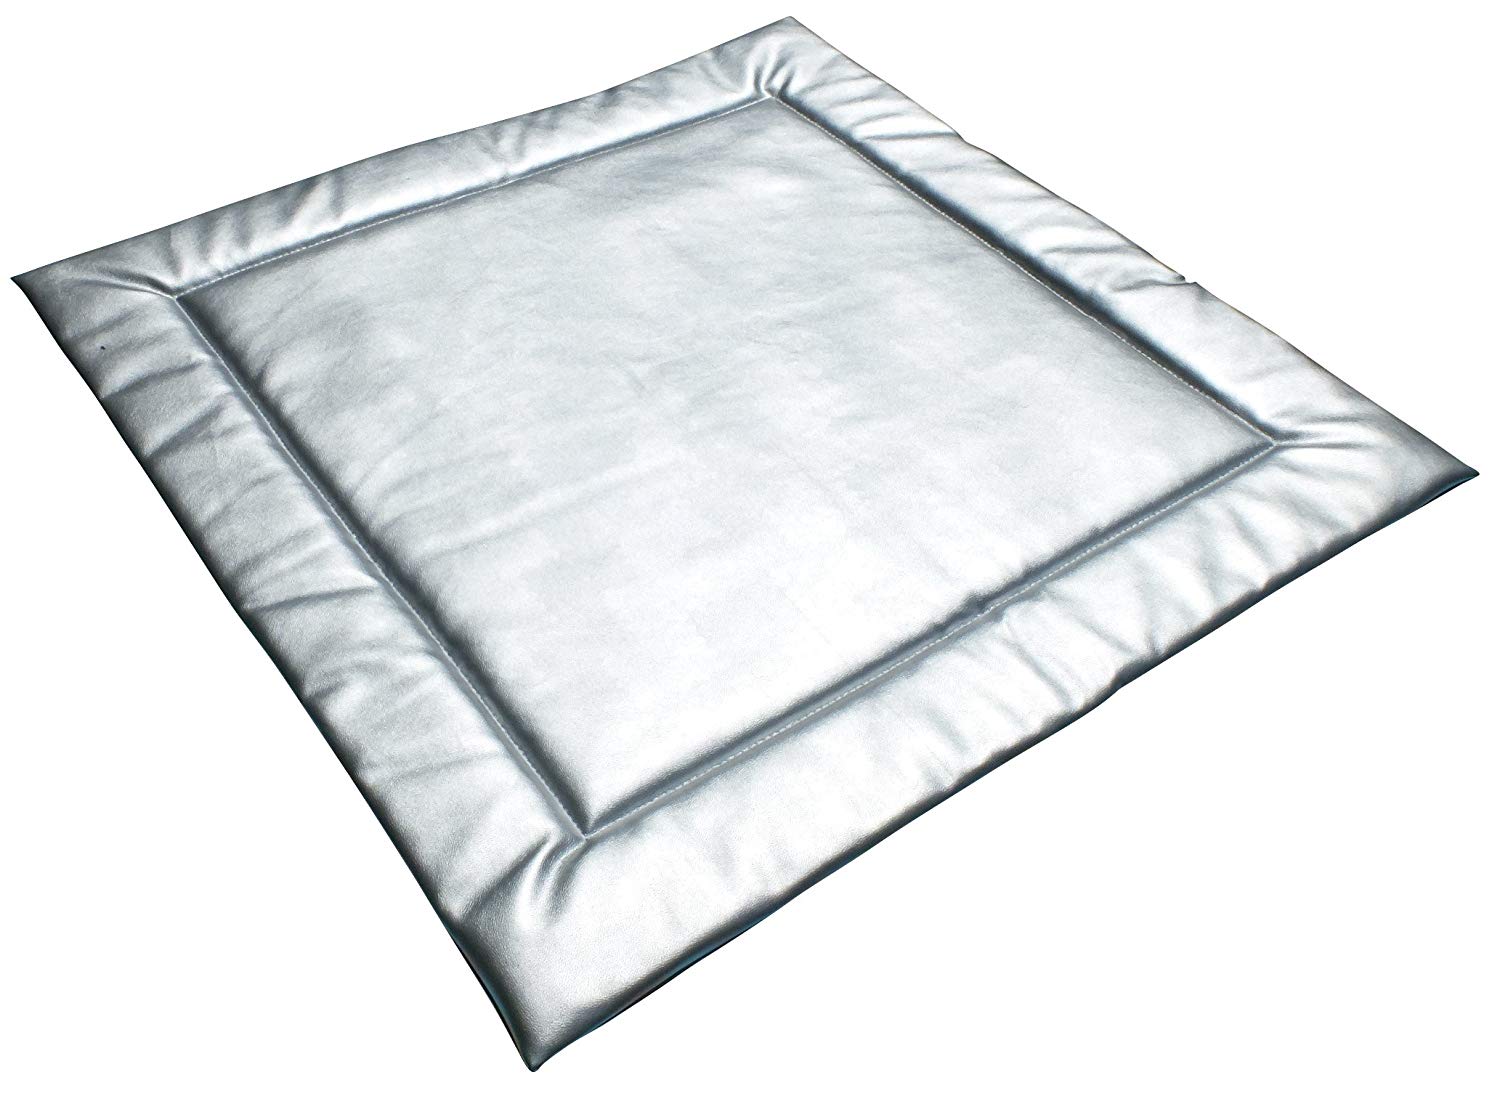 Ideenreich 2452 Crawling Blanket 125cmx125 cm Idea Metallic Silver Photo Frame, Silver